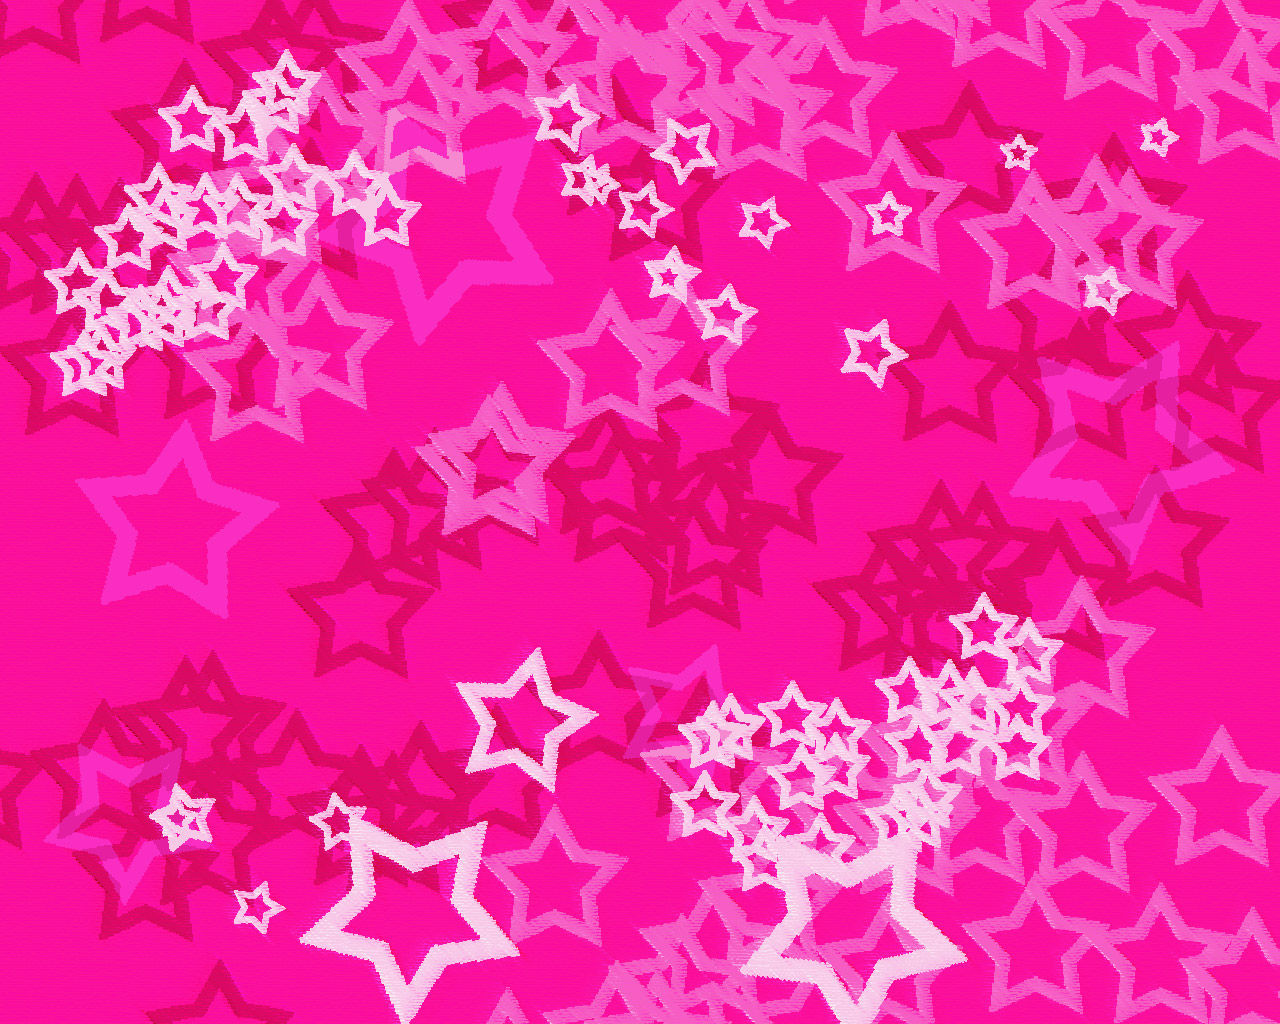 Looool15 Pink Wallpaper [1280x1024] là bộ sưu tập hình nền tuyệt đẹp mà bạn nên sở hữu. Hãy tải ngay những bức hình nền này và trang trí máy tính của bạn với những màu hồng tuyệt đẹp.